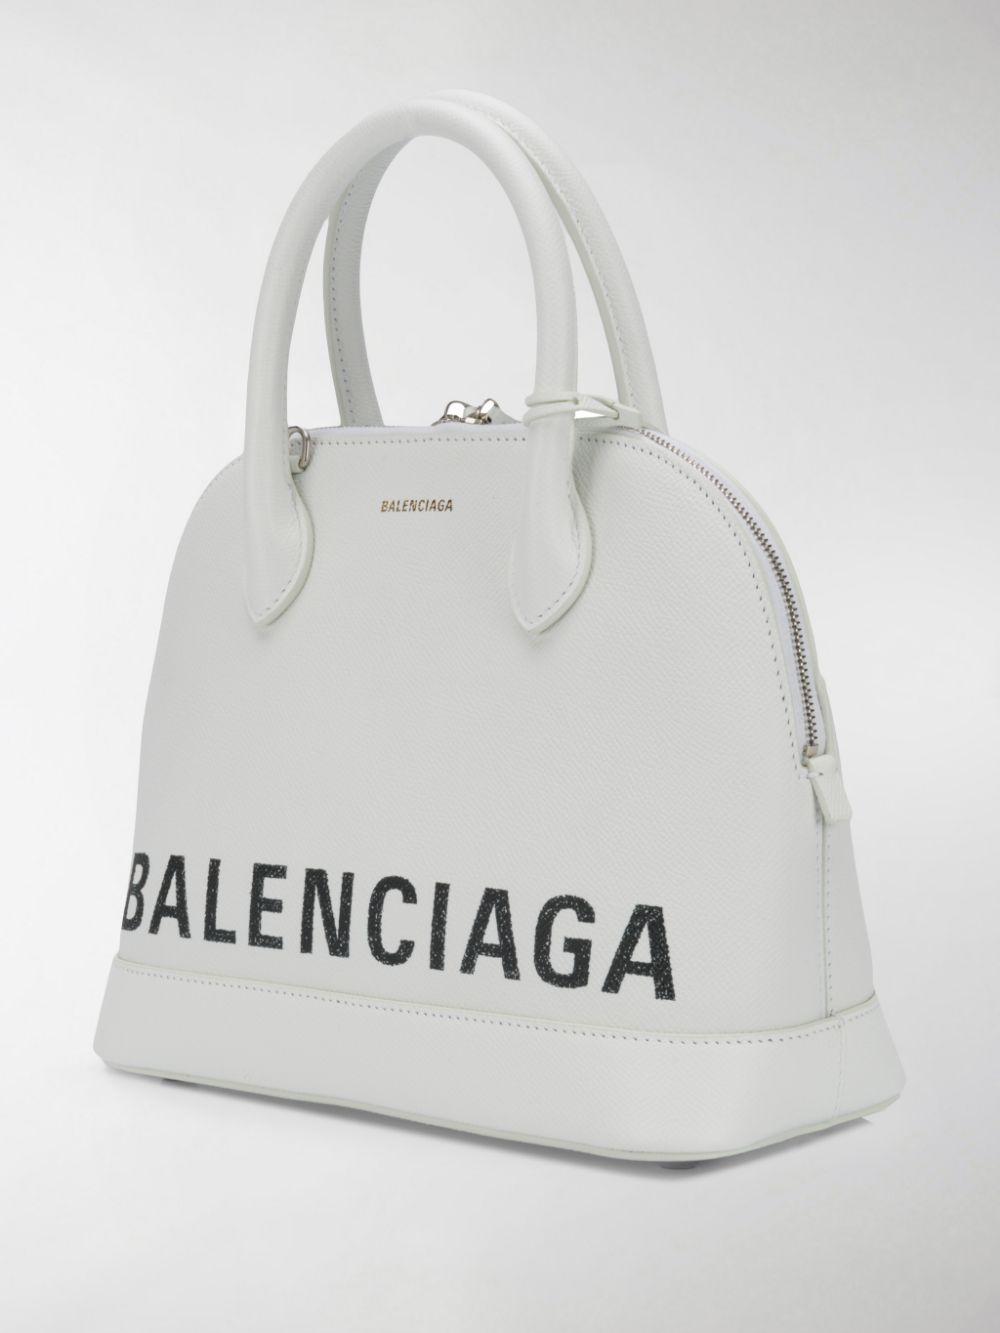 Balenciaga Ville Small Tote Bag in White - Lyst